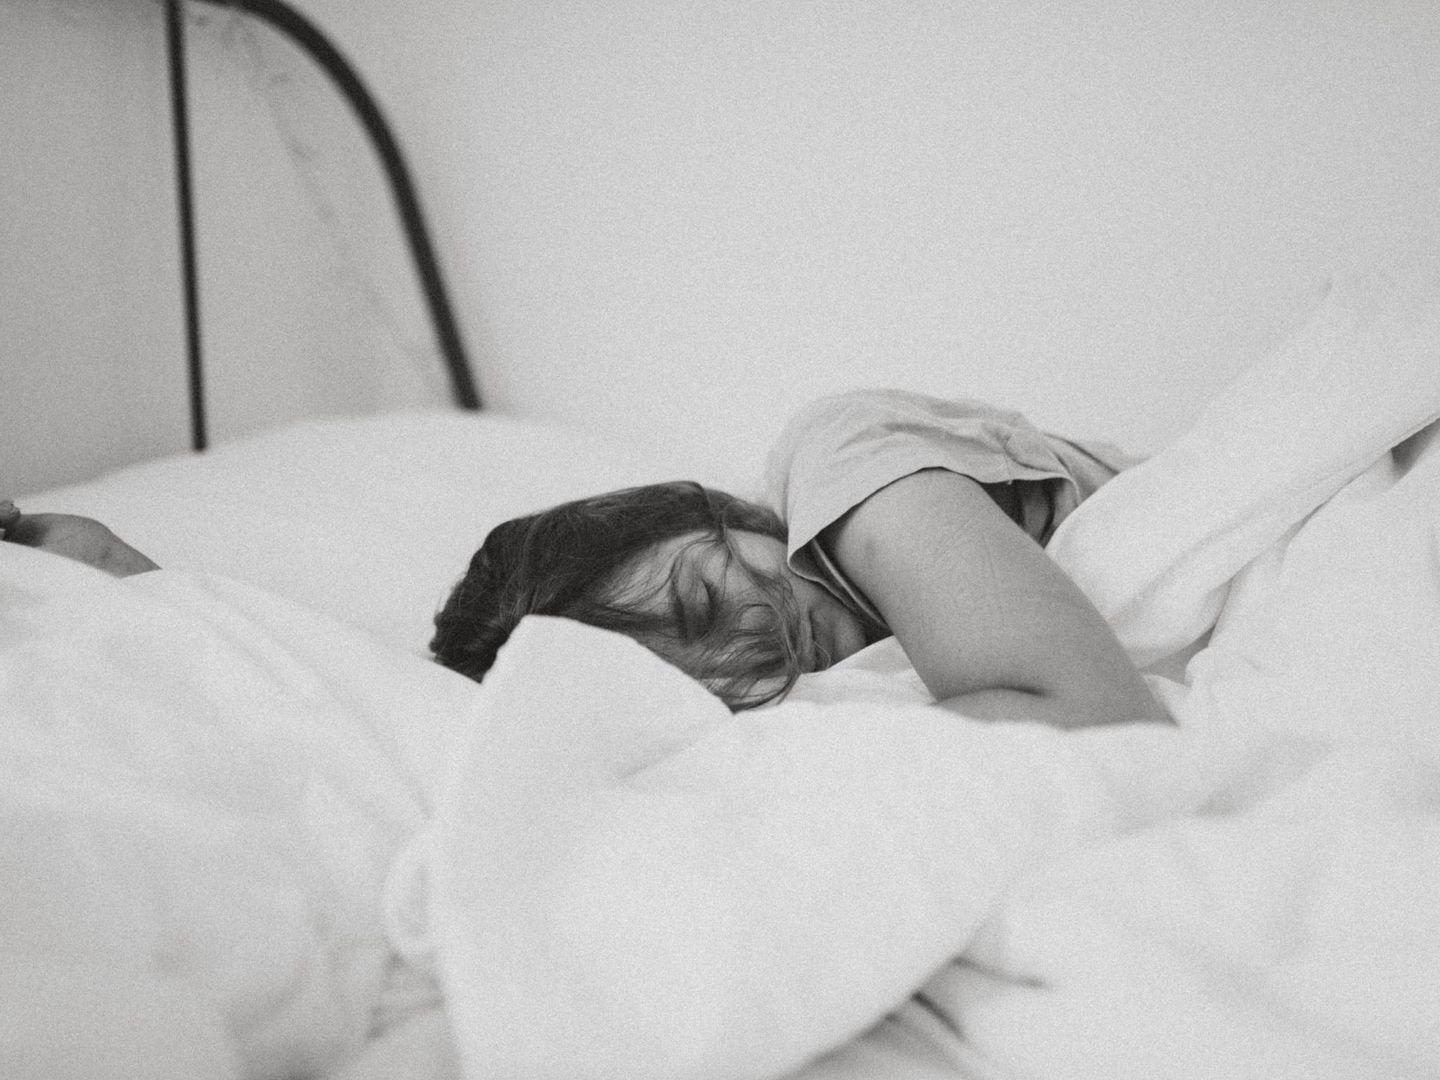 Dormir más de la cuenta es perjudicial para adelgazar. (Kinga Cichewicz on Unsplash)